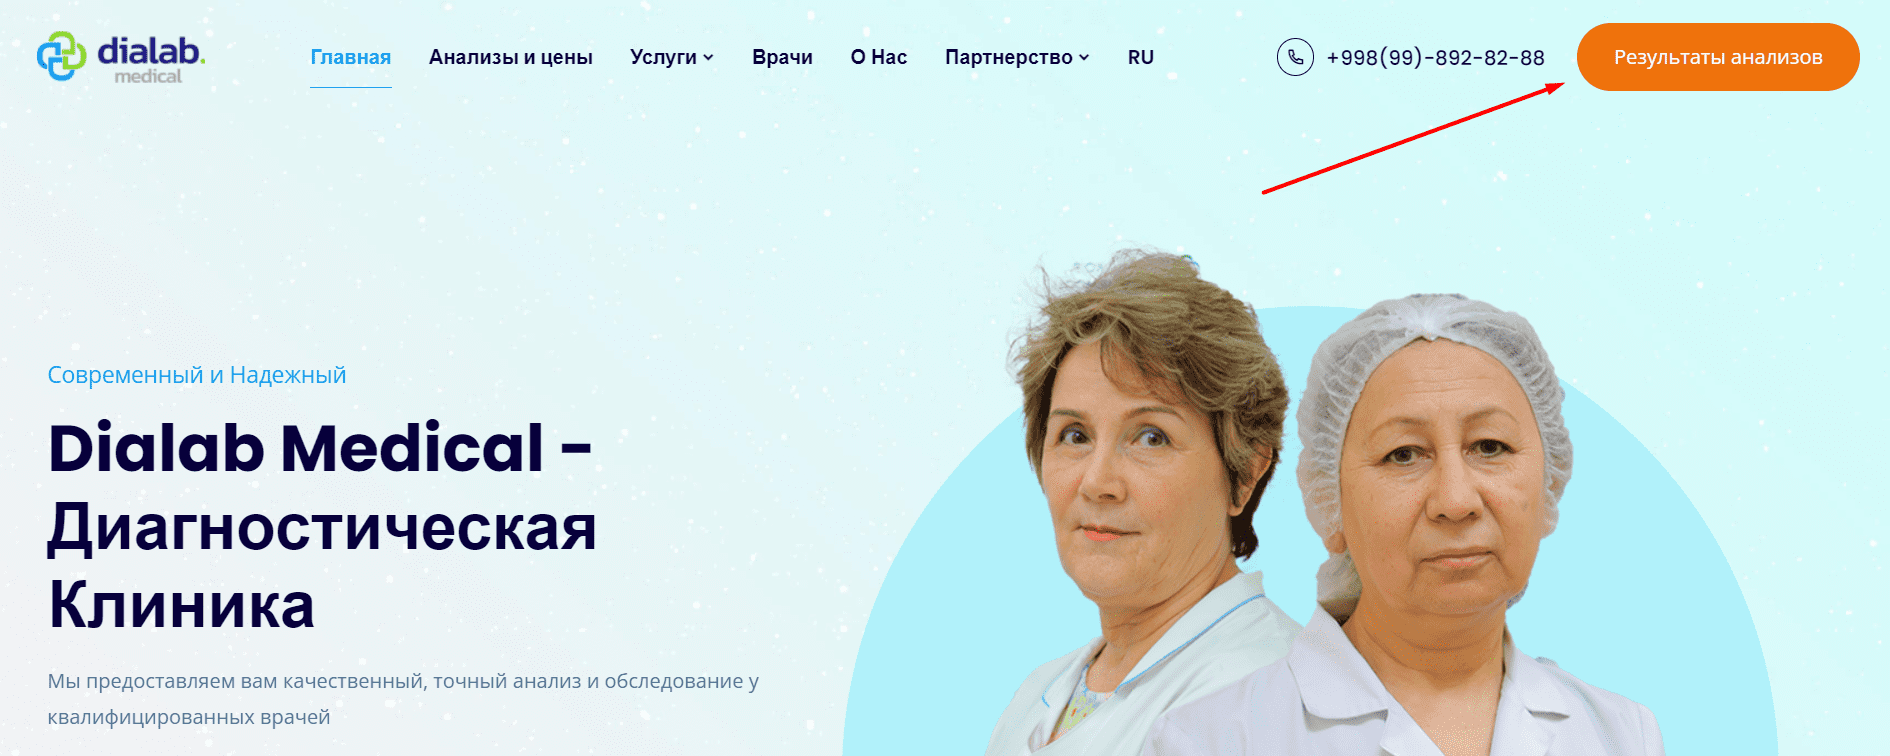 Dialab Medical Service (dialab.uz) - официальный сайт, результаты анализов